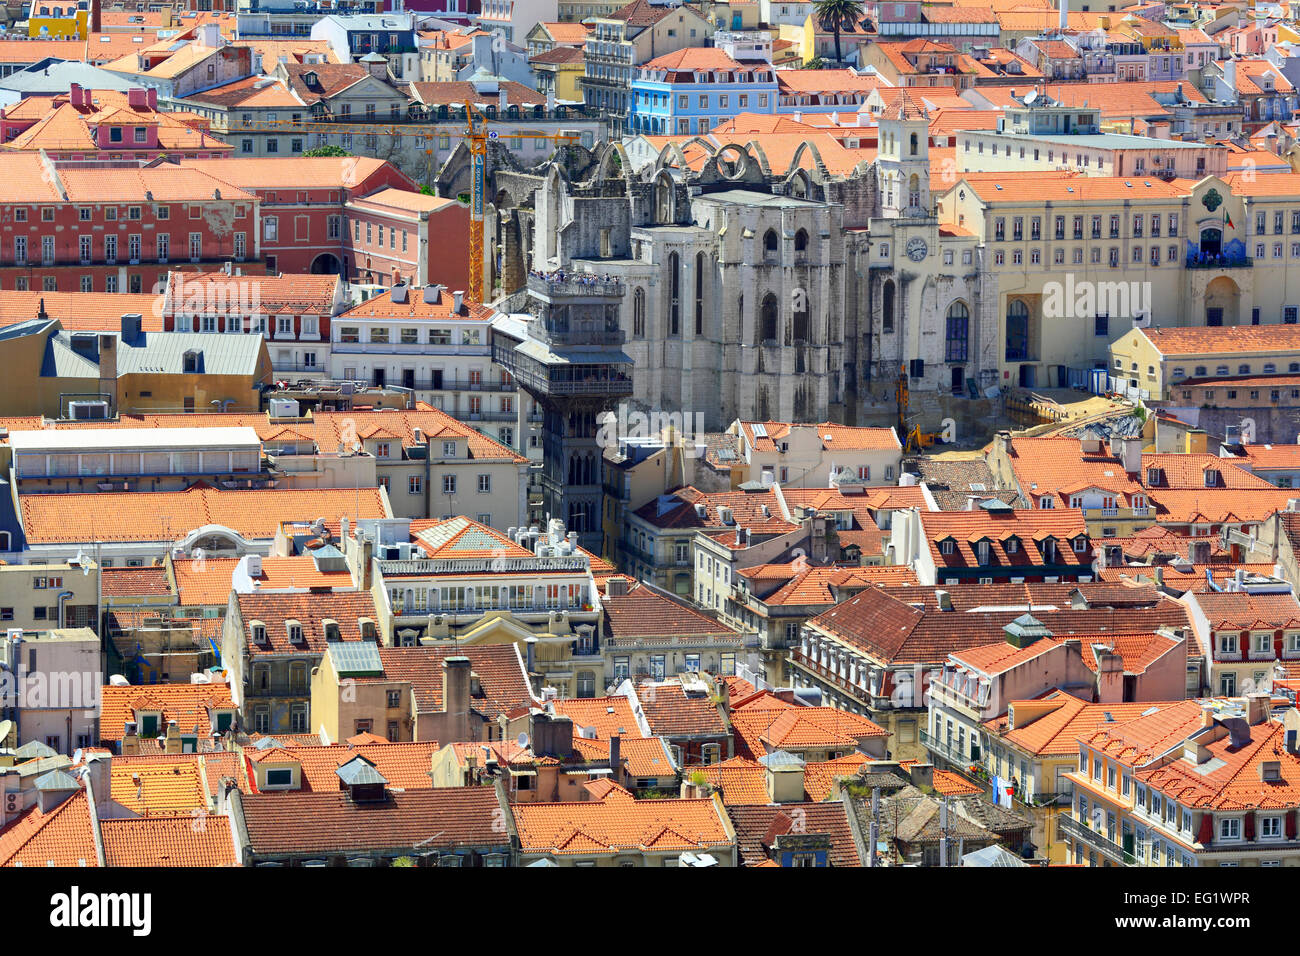 Cityscape de château de Sao Jorge (Castelo de Sao Jorge), Lisbonne, Portugal Banque D'Images